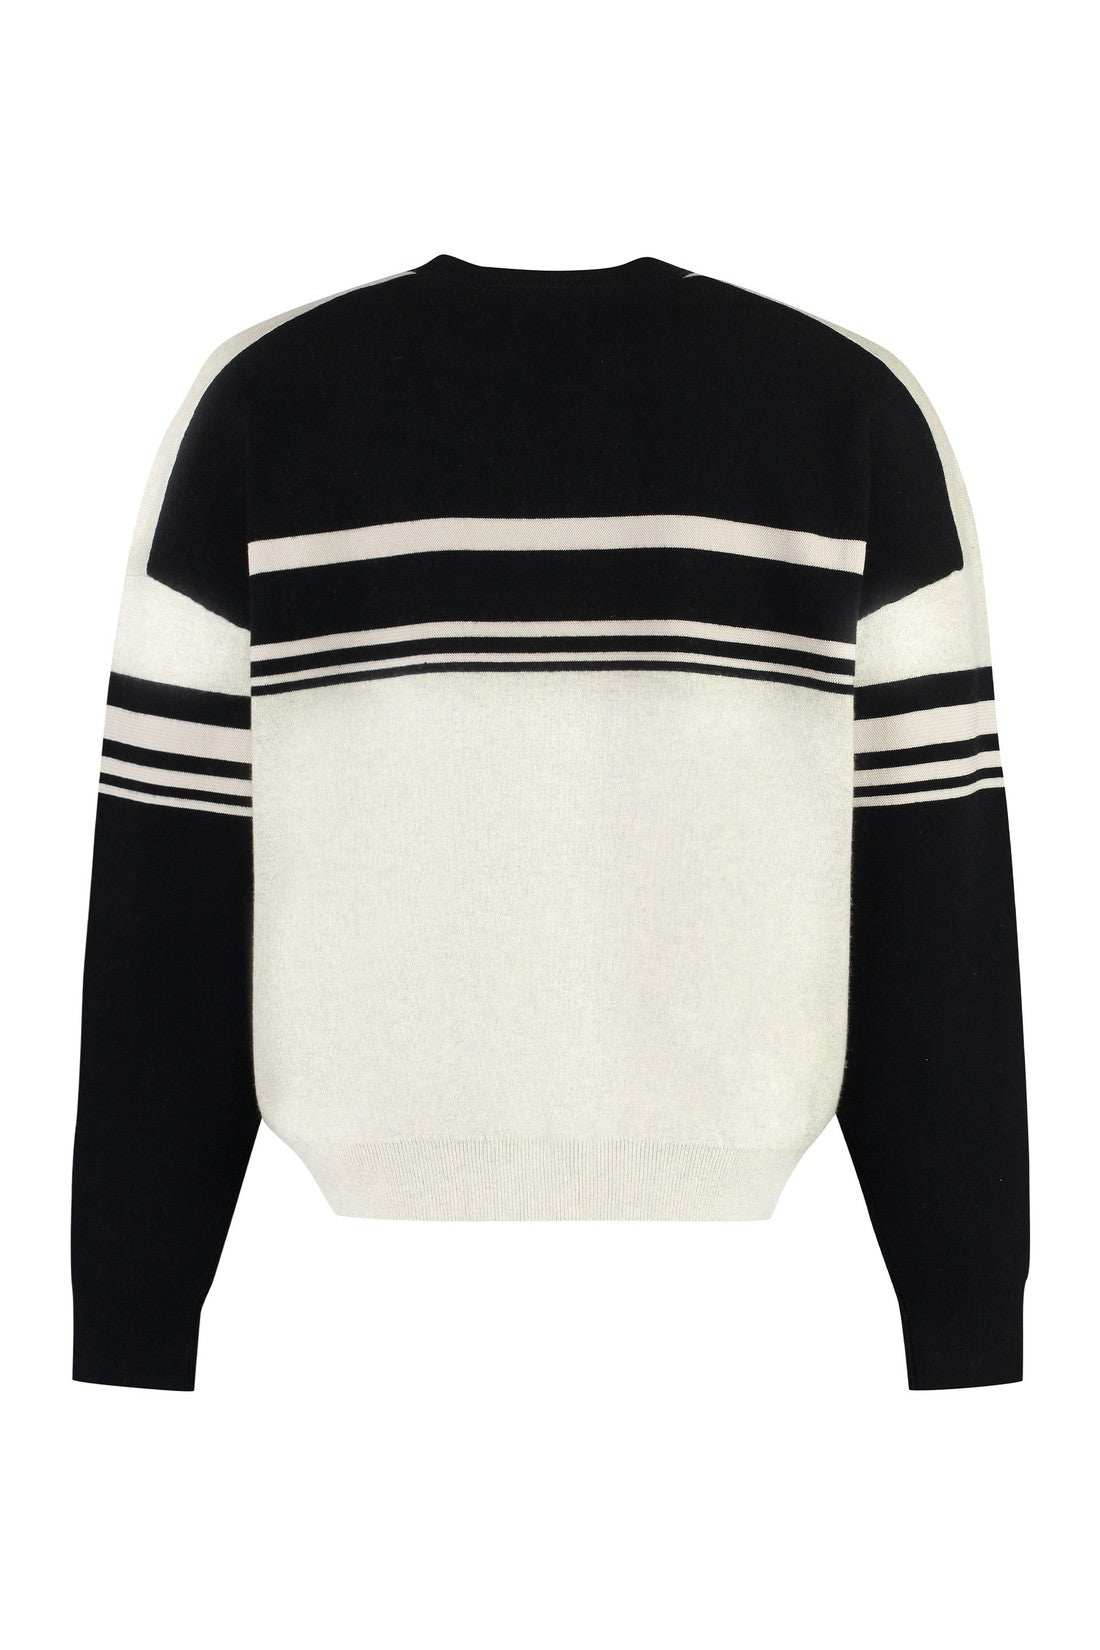 Marant-OUTLET-SALE-Cotton blend crew-neck sweater-ARCHIVIST